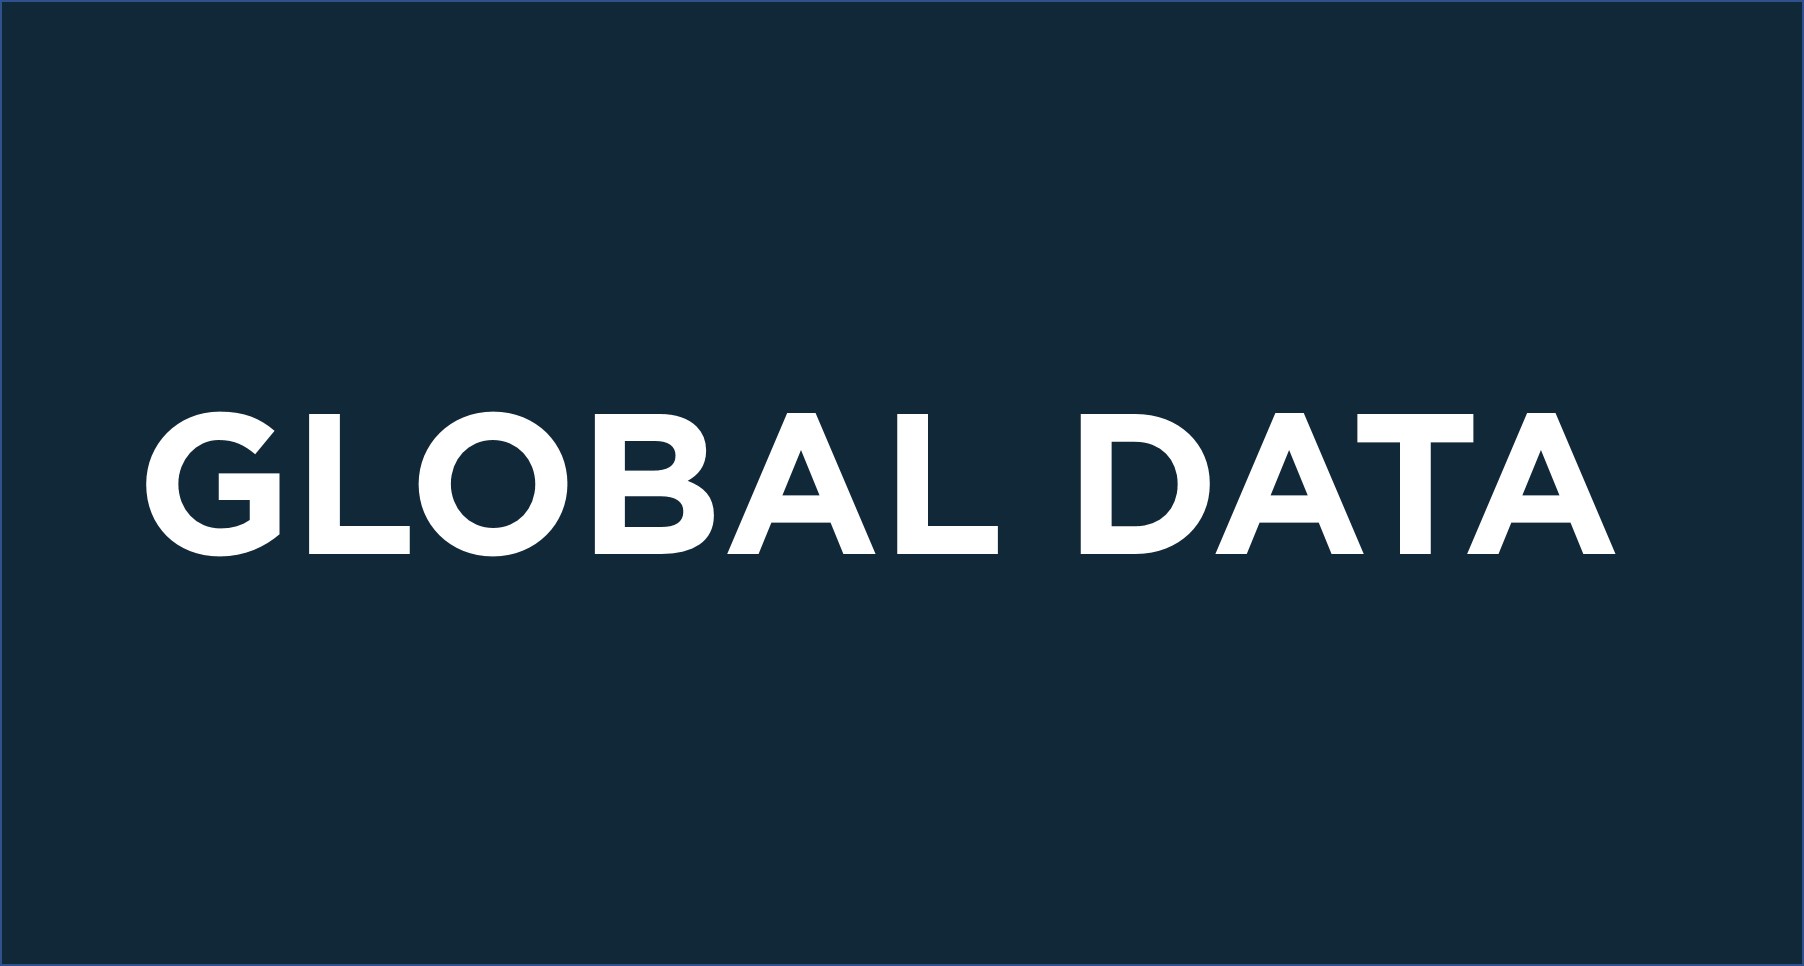 Global Data